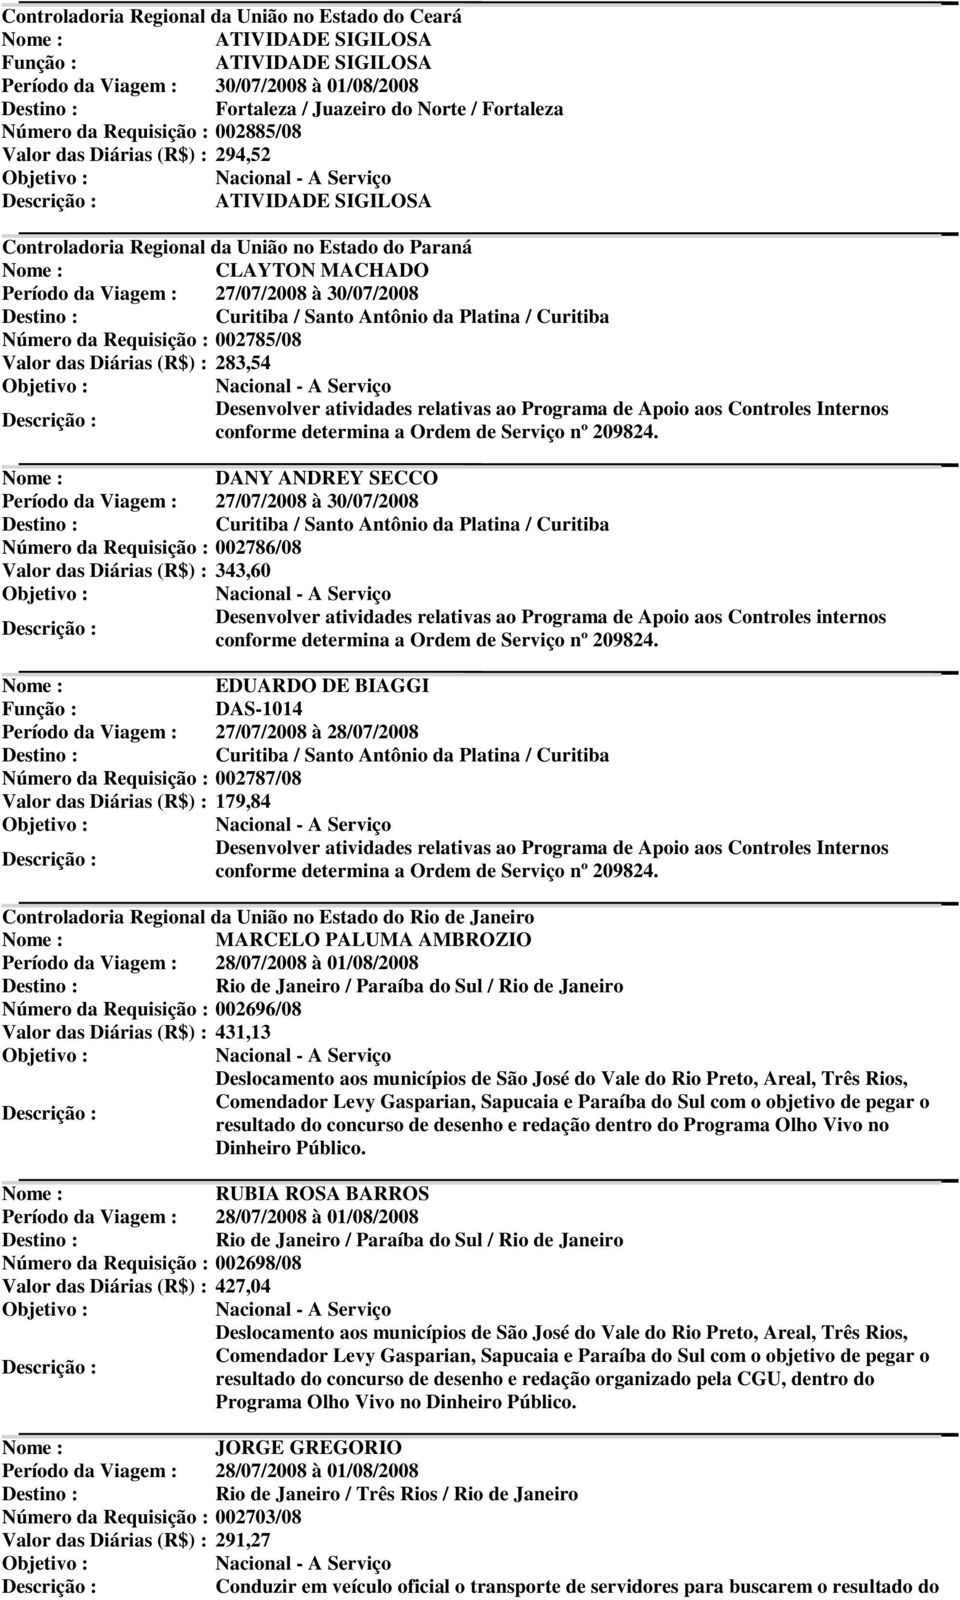 Santo Antônio da Platina / Curitiba Número da Requisição : 002785/08 Valor das Diárias (R$) : 283,54 Desenvolver atividades relativas ao Programa de Apoio aos Controles Internos conforme determina a